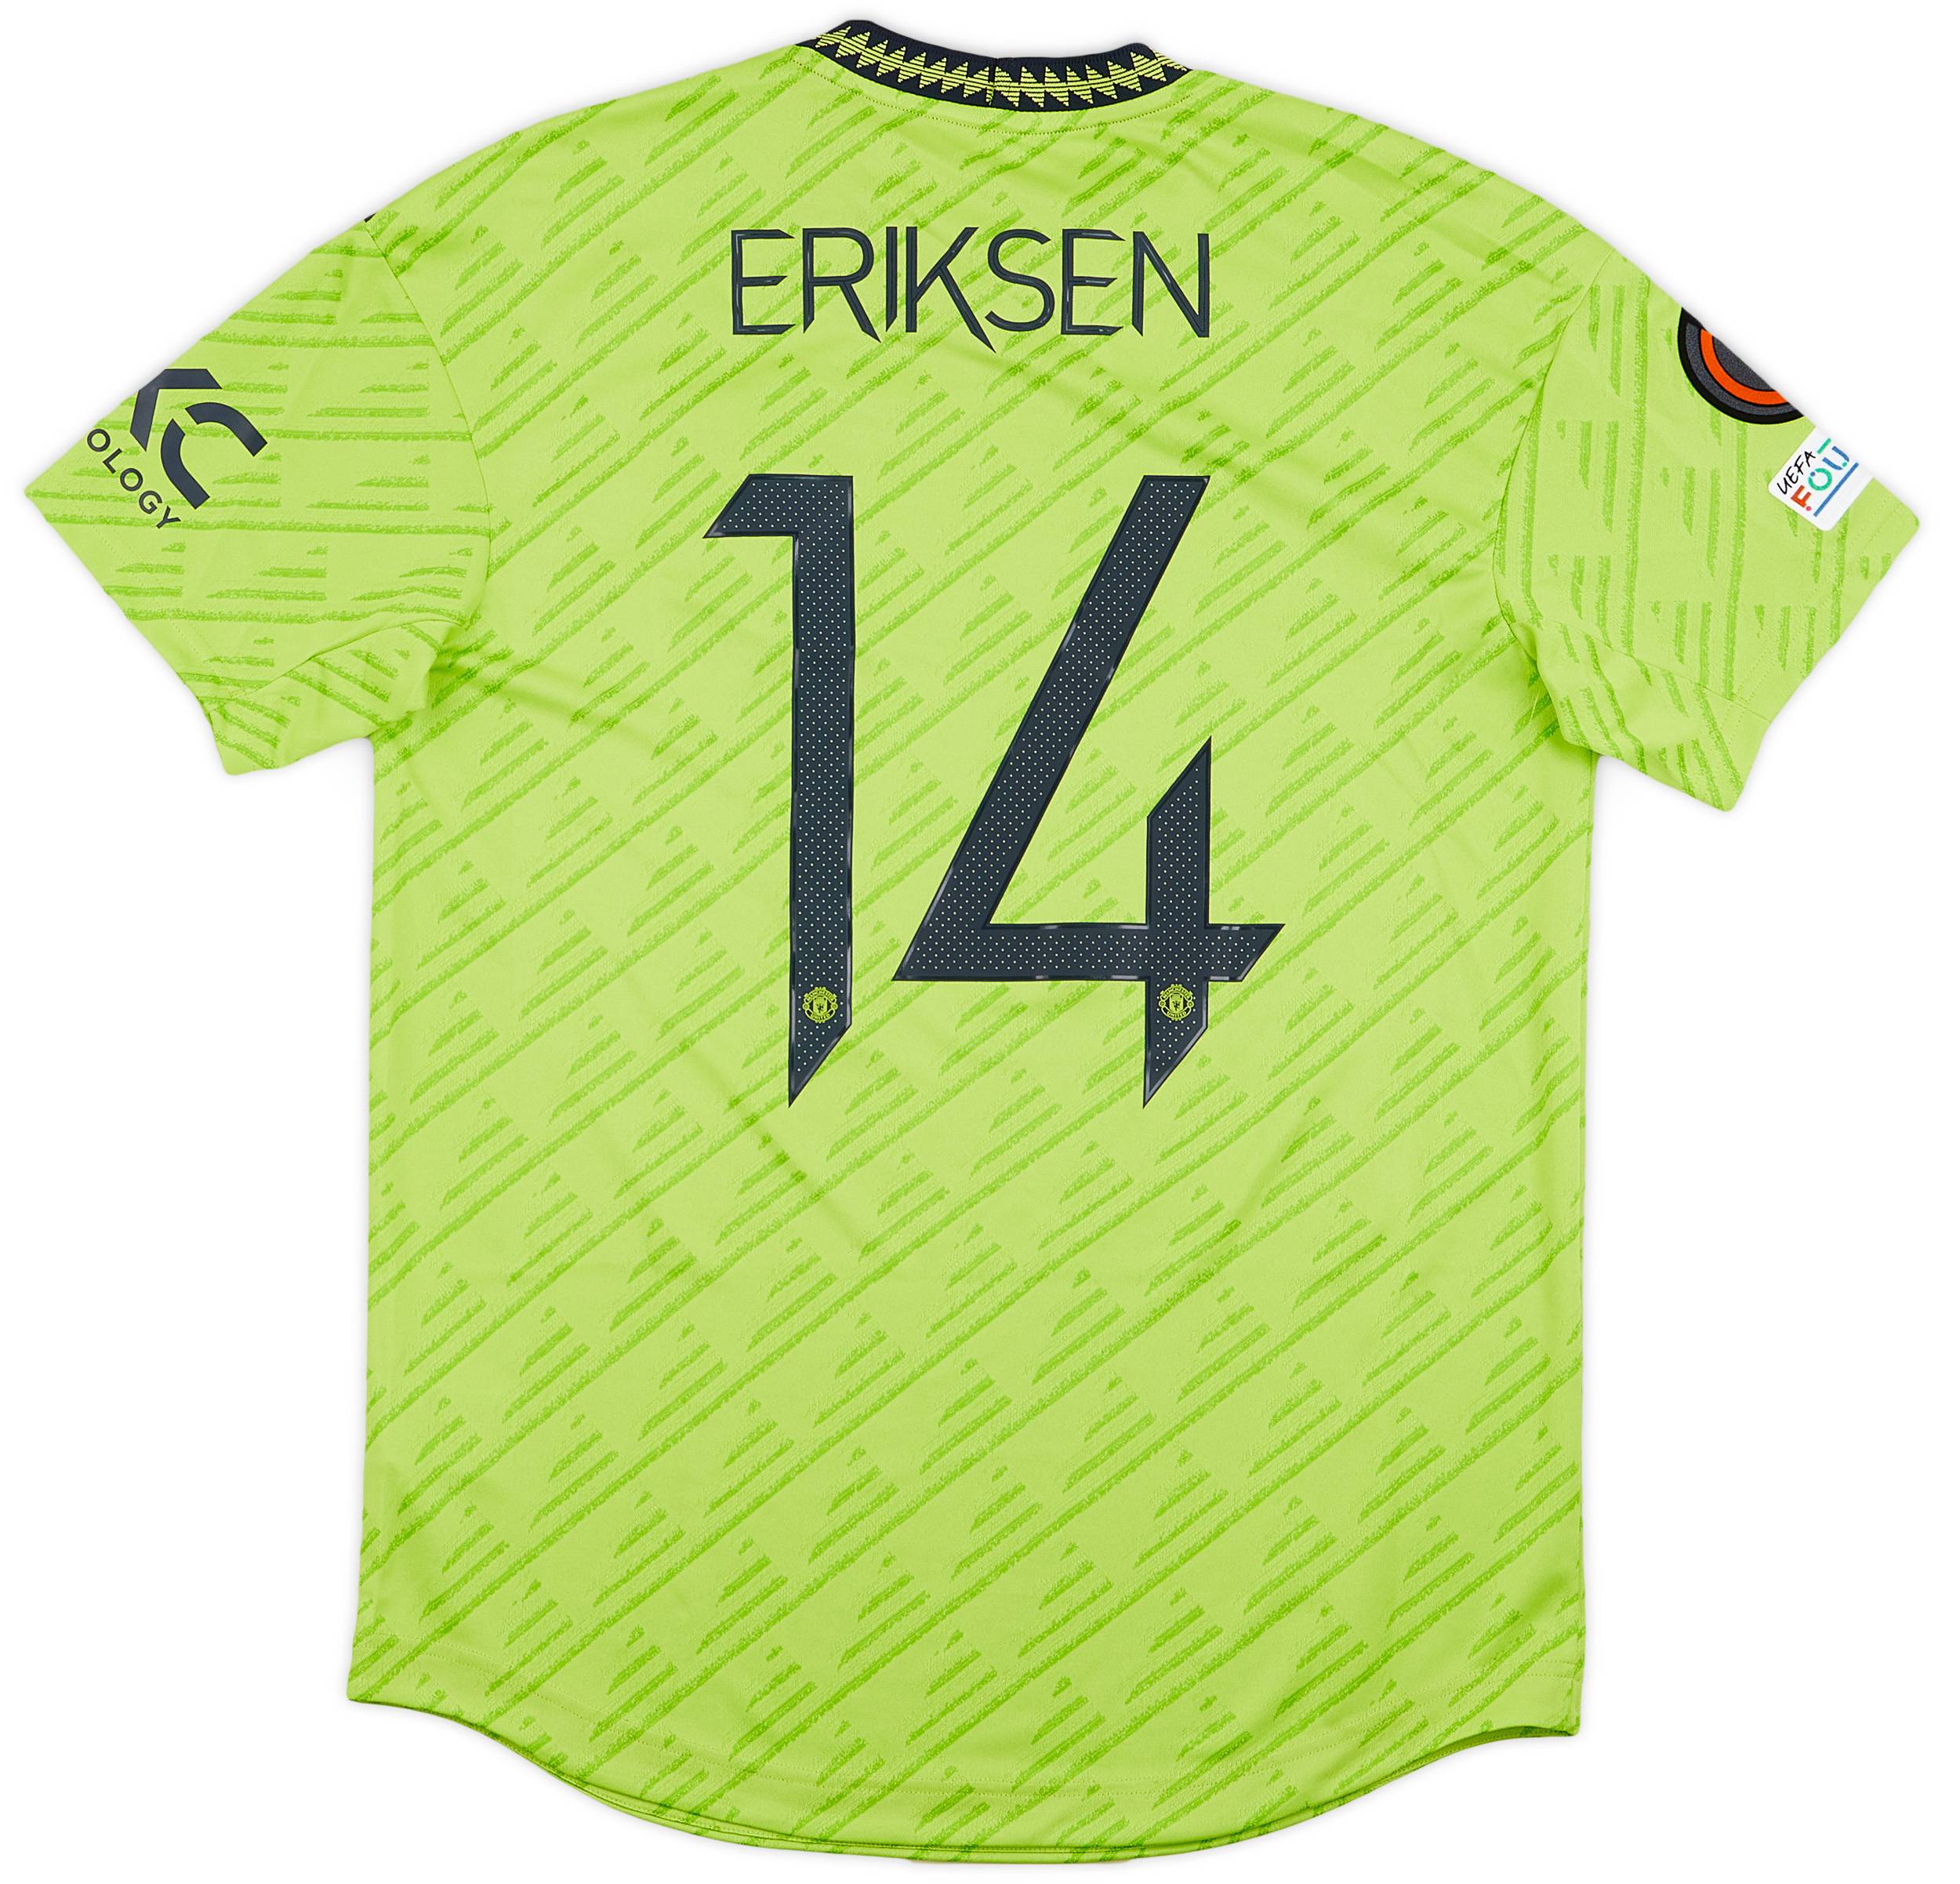 2022-23 Manchester United Authentic Third Eriksen #14 (M)